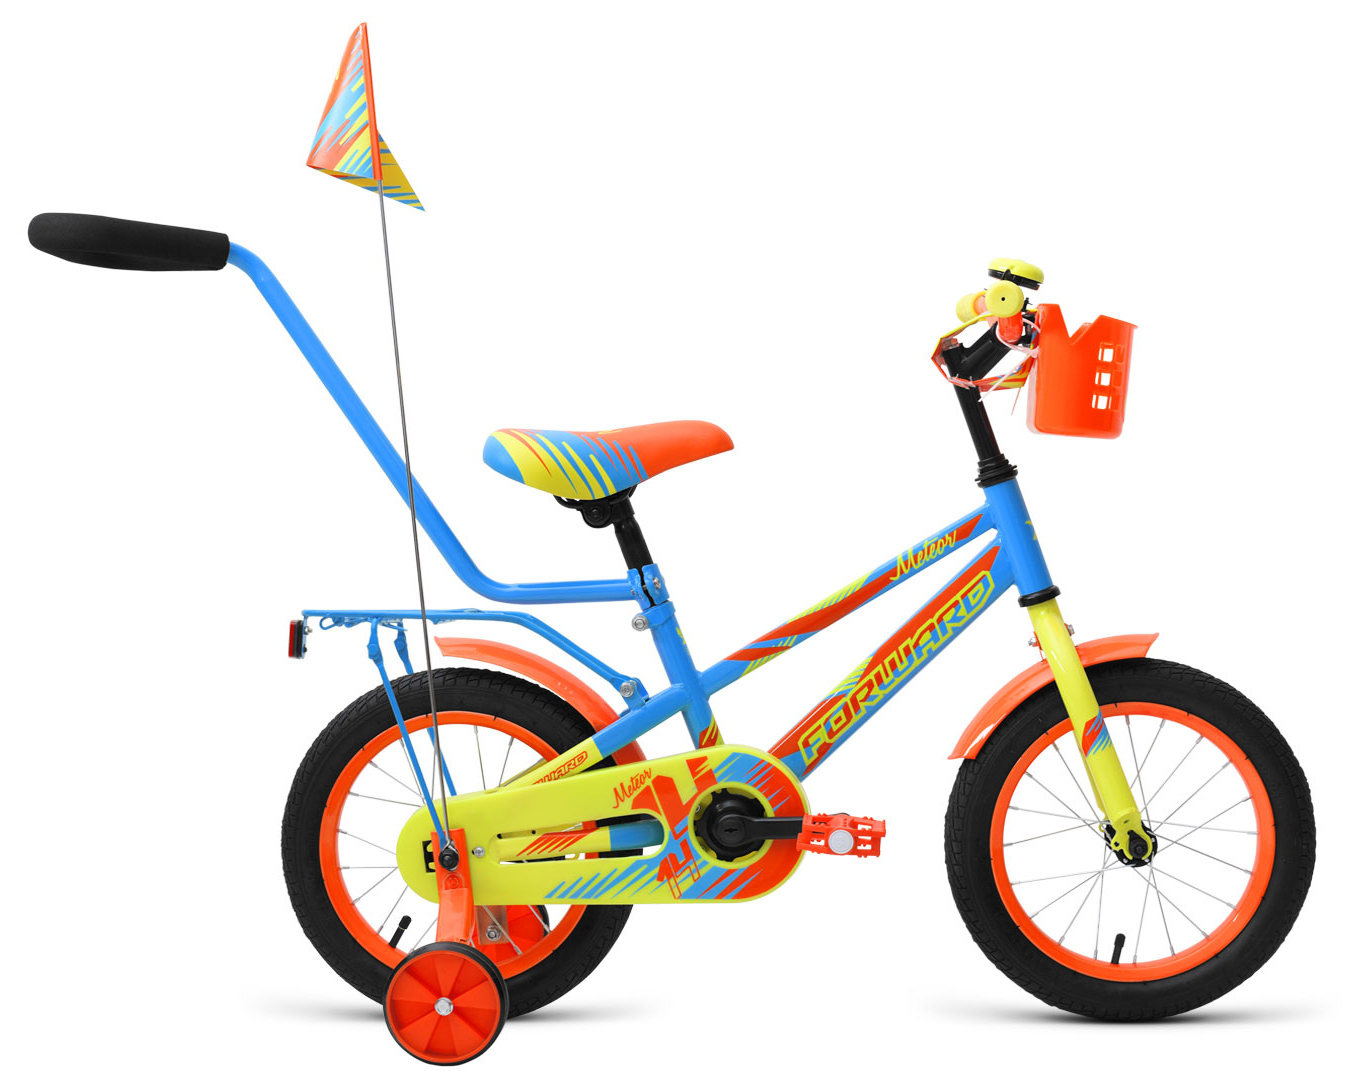  Отзывы о Трехколесный детский велосипед Forward Meteor 14 2019